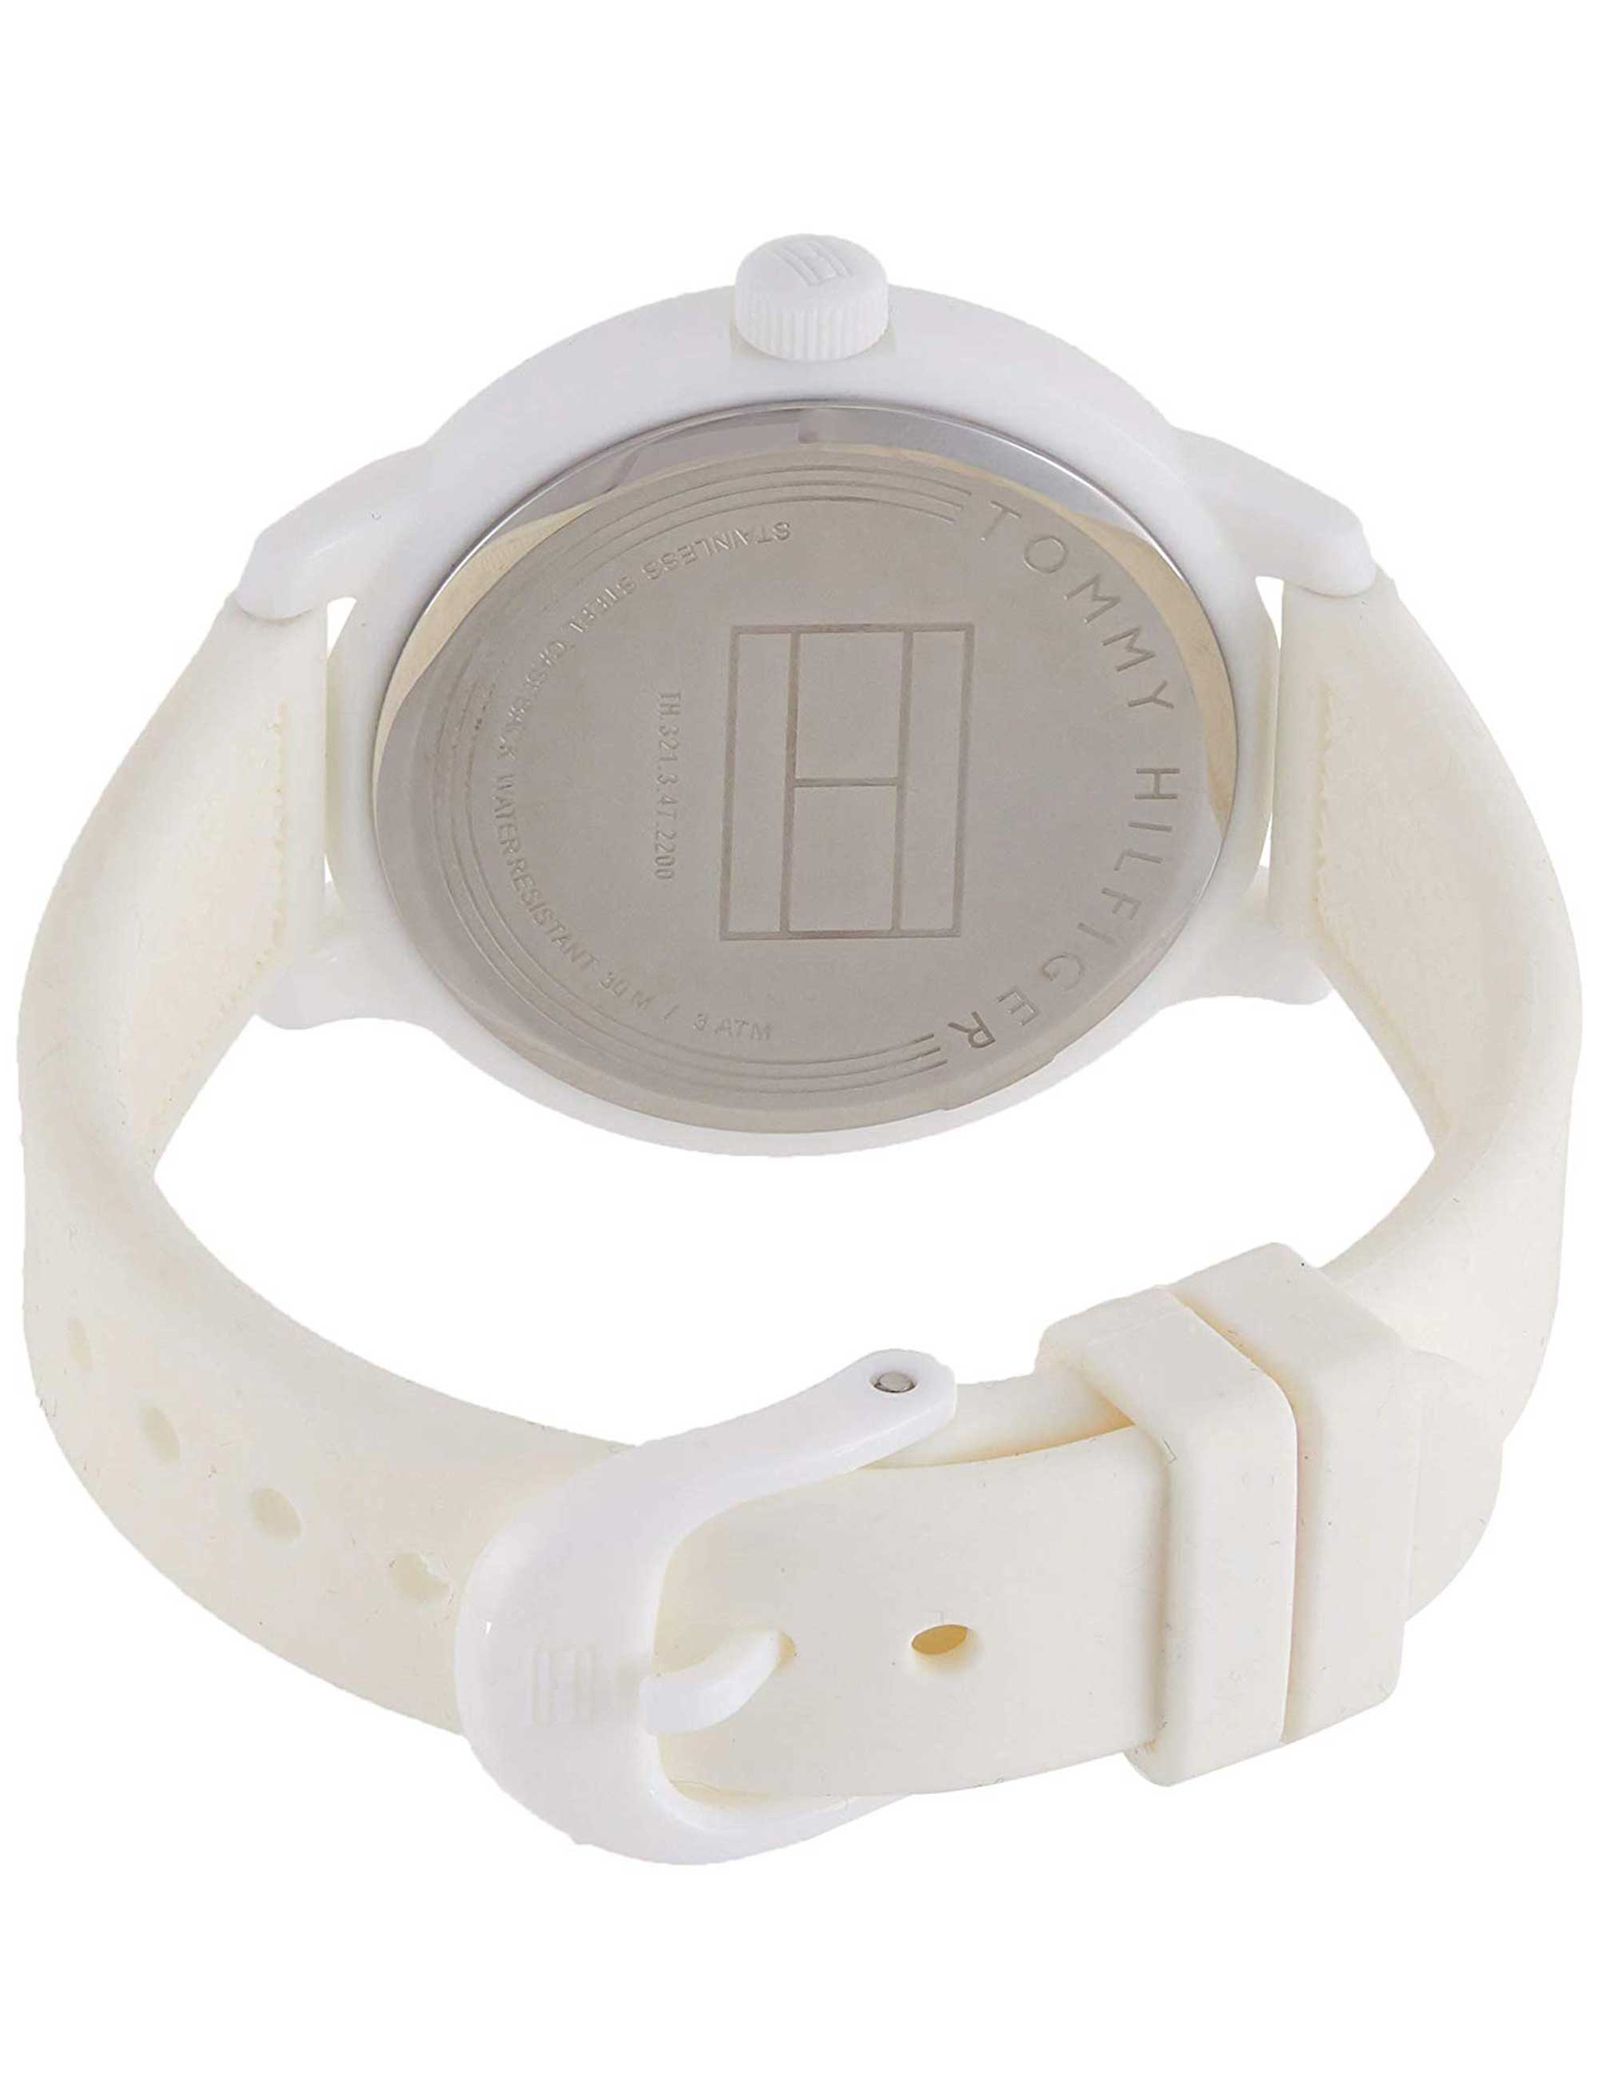 ساعت مچی عقربه ای زنانه تامی هیلفیگر مدل 1781774 - سفید - 3